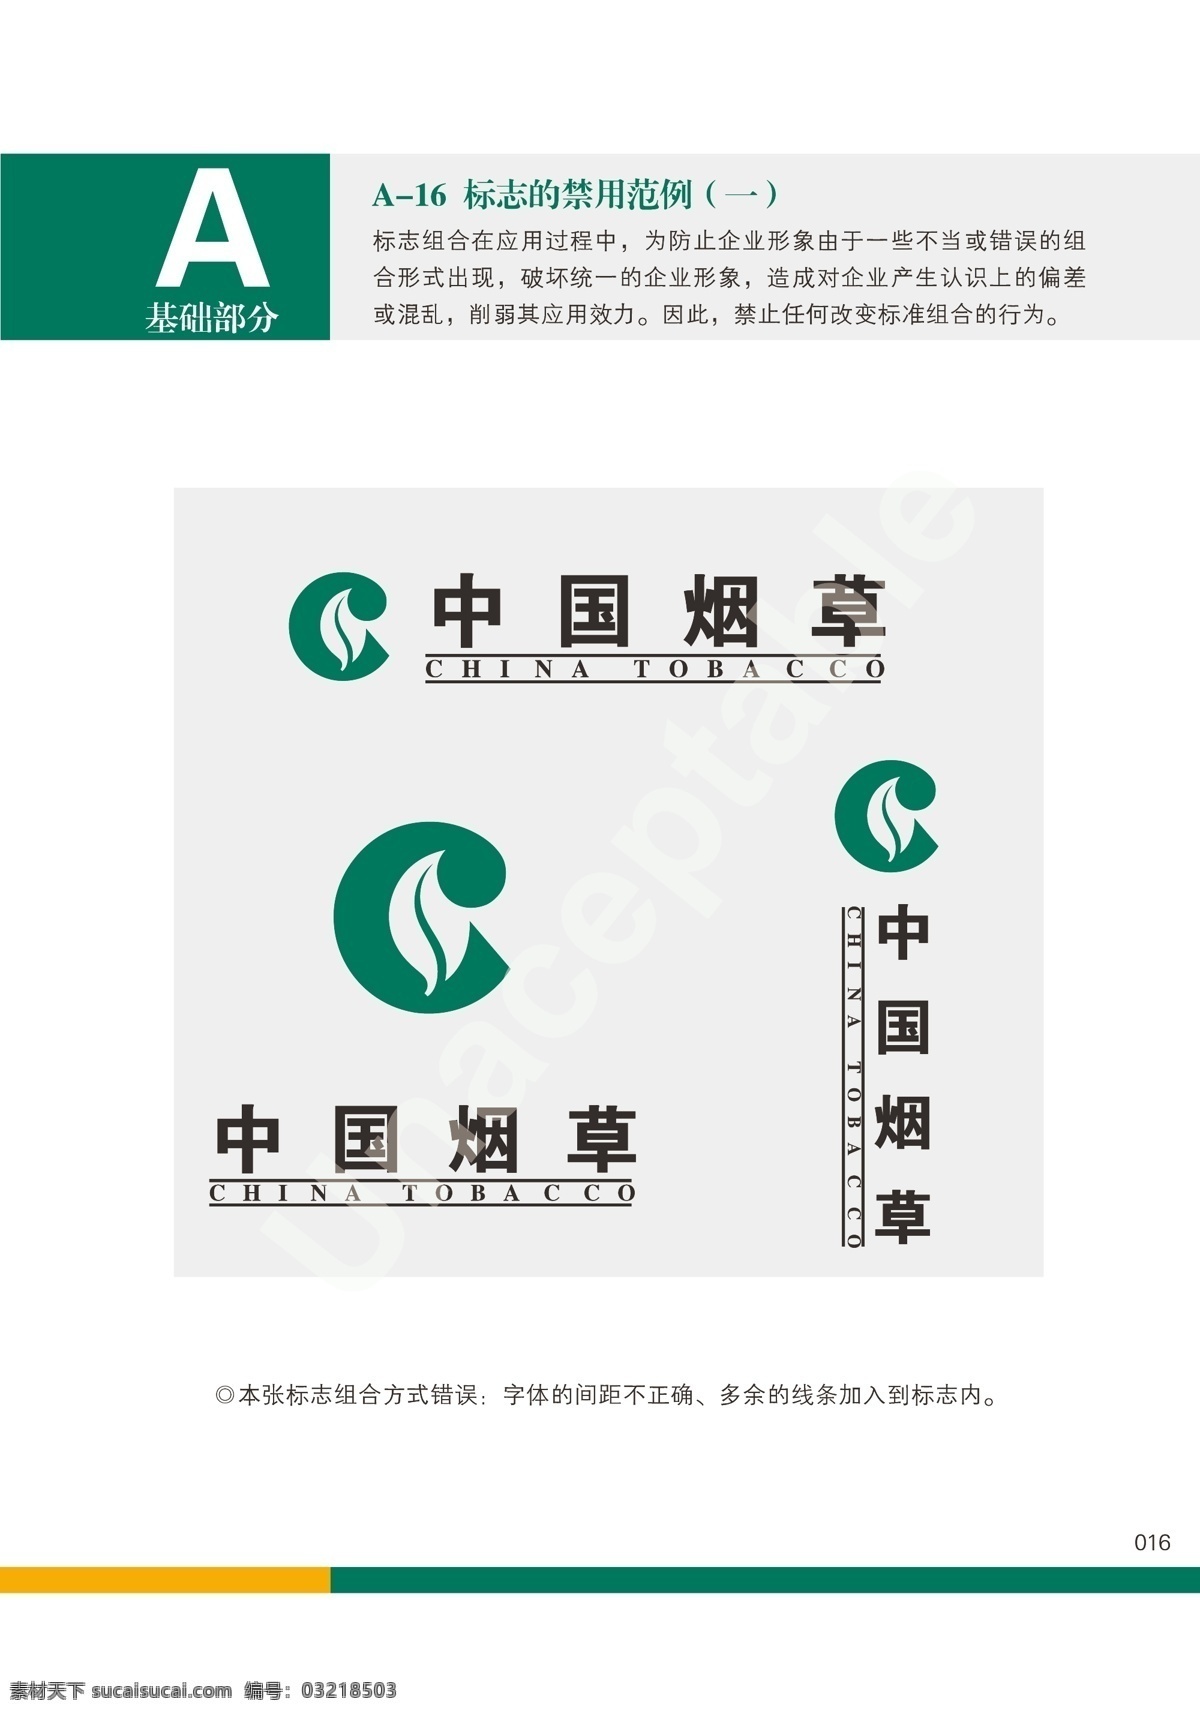 中国 烟草 vi 标志 标准 矢量图 中国烟草